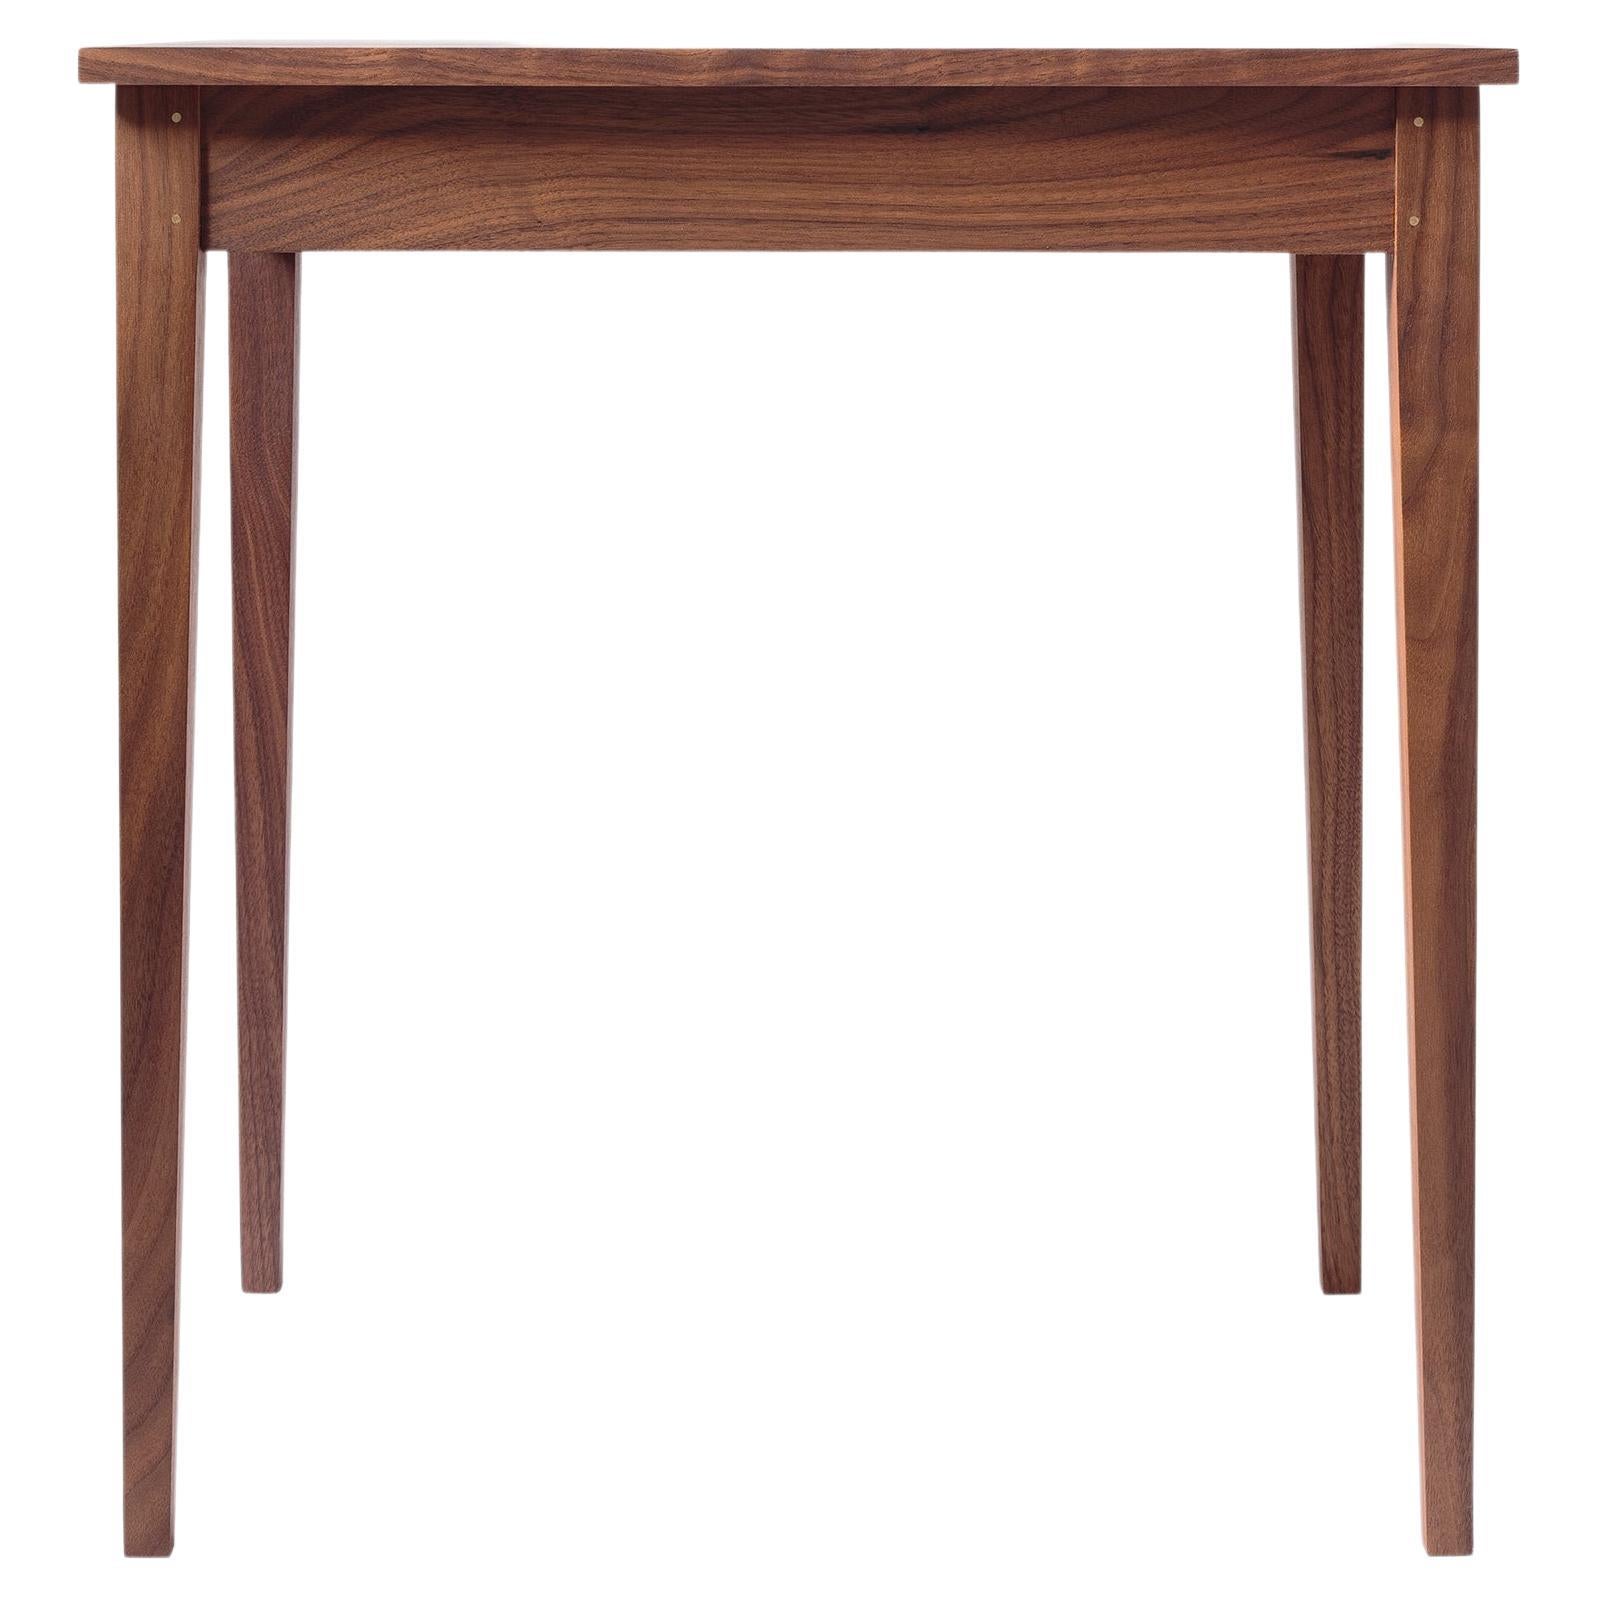 Wright Side Table, Shaker Side Table in Modern Walnut